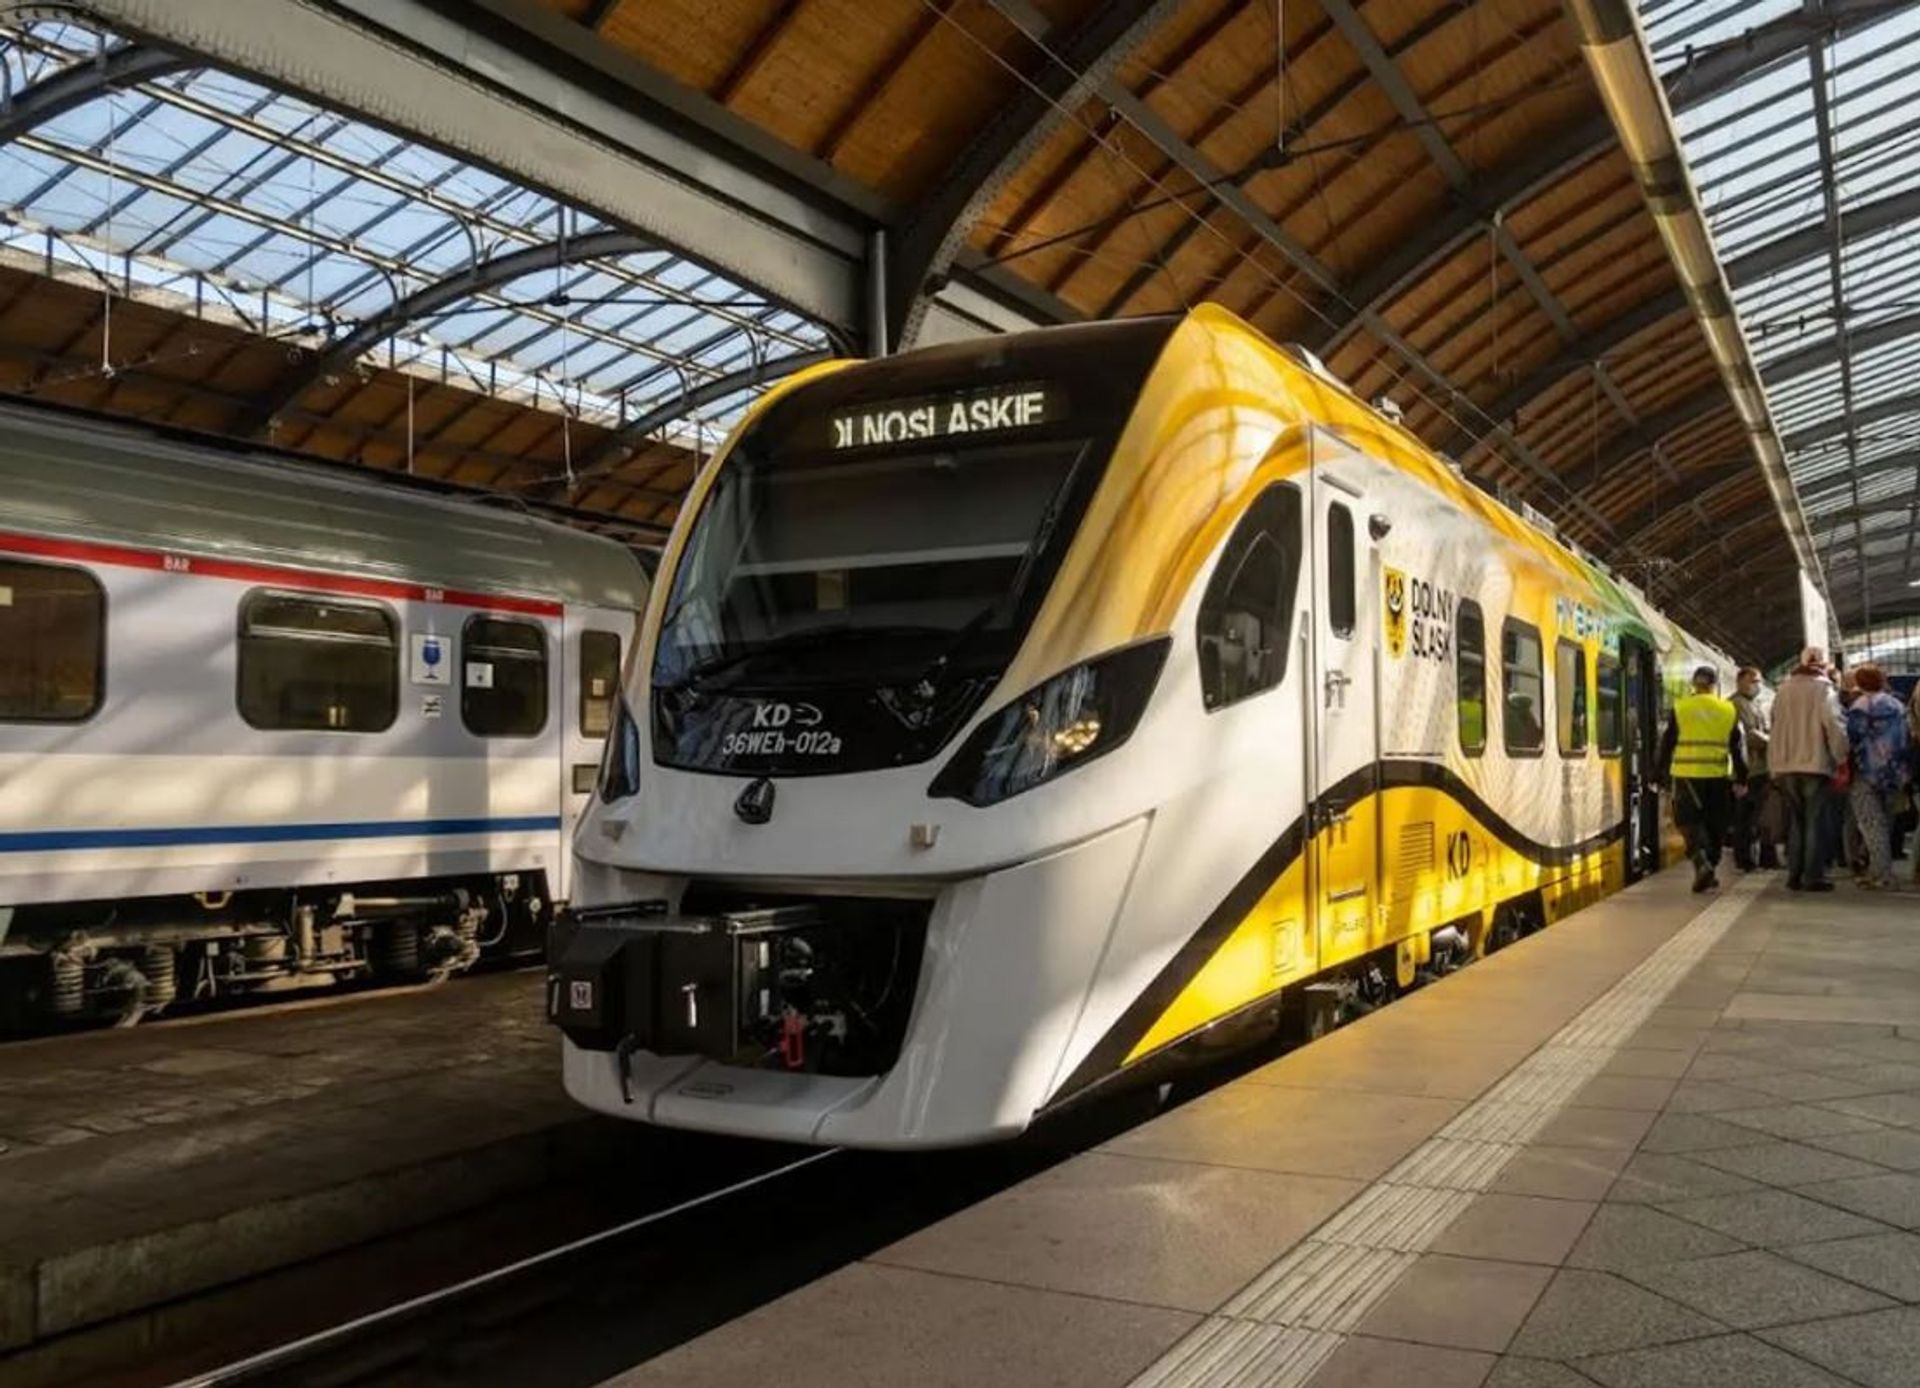 Pociągi Dolnośląskich Kolei Aglomeracyjnych pojawią się na trasie Wrocław - Oborniki Śląskie - Korzeńsko